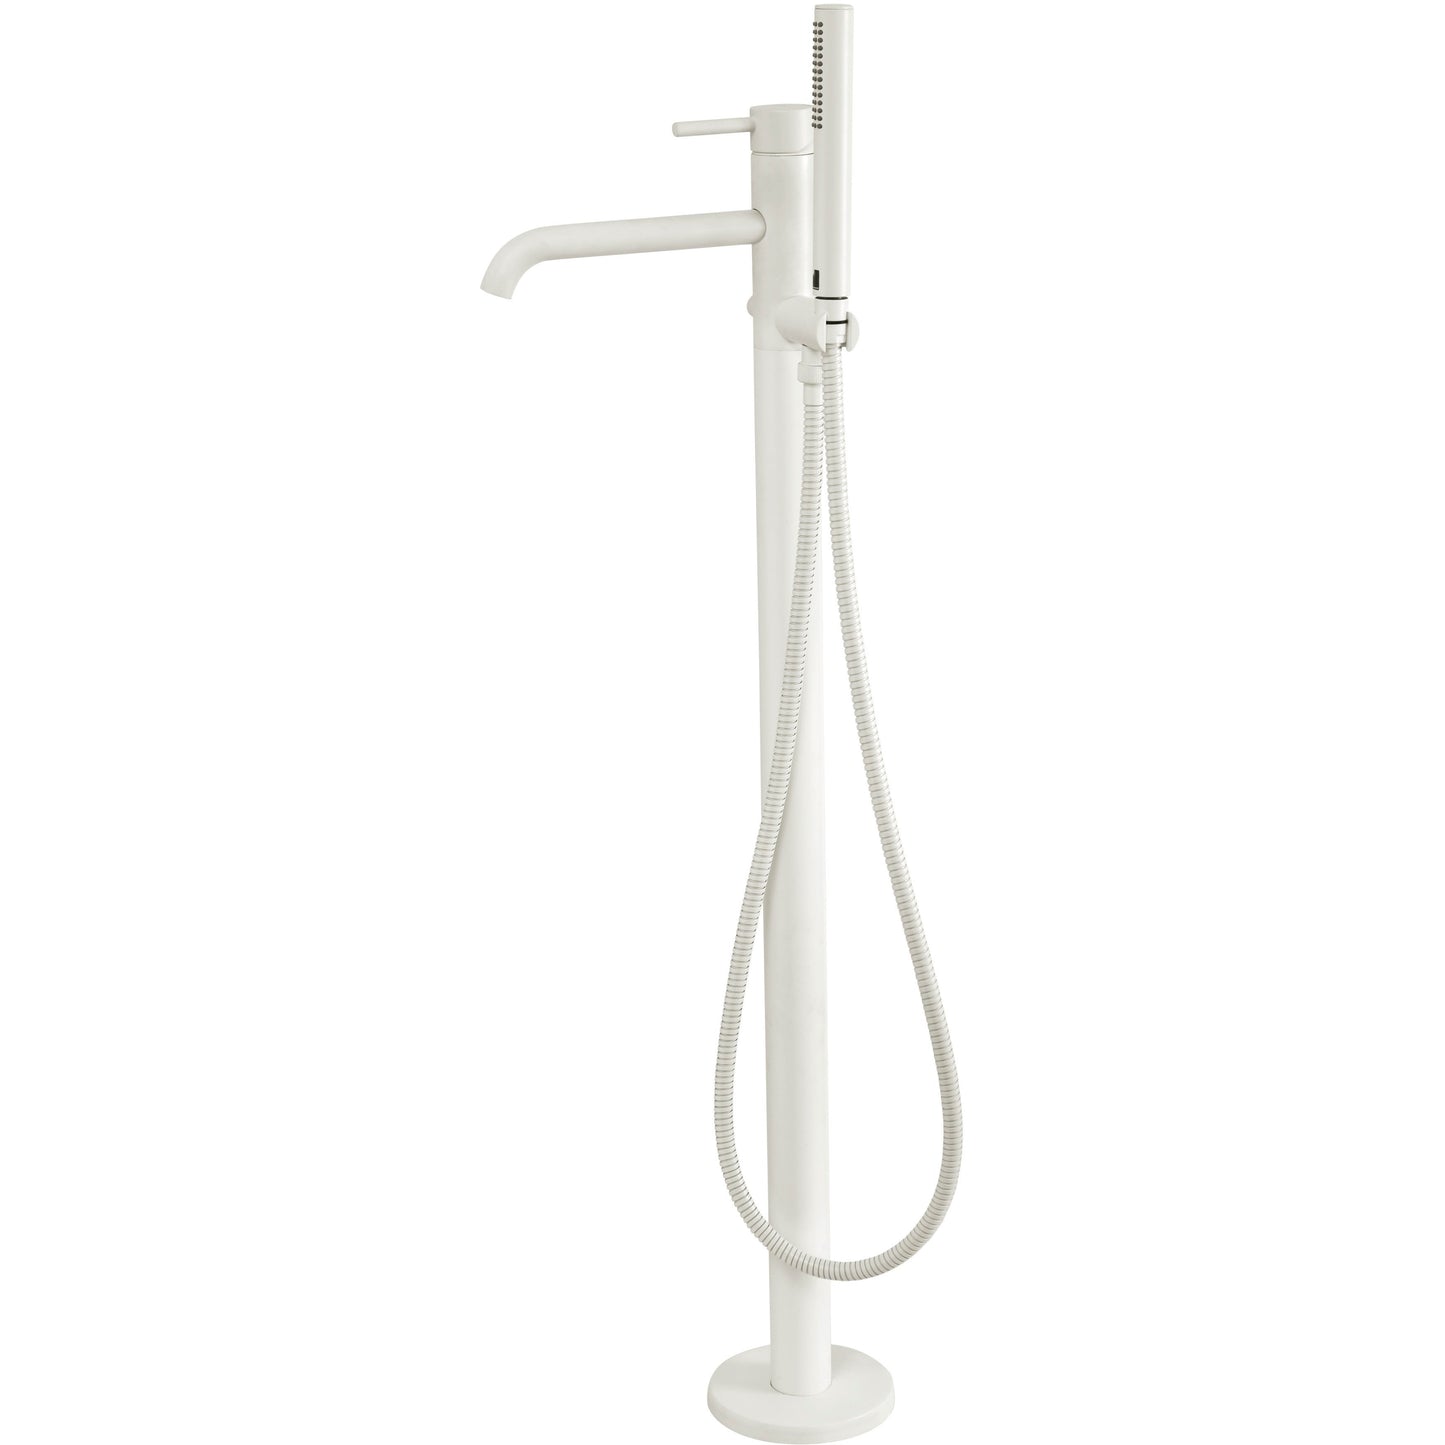 Bath faucet Digit freestanding single lever 121156